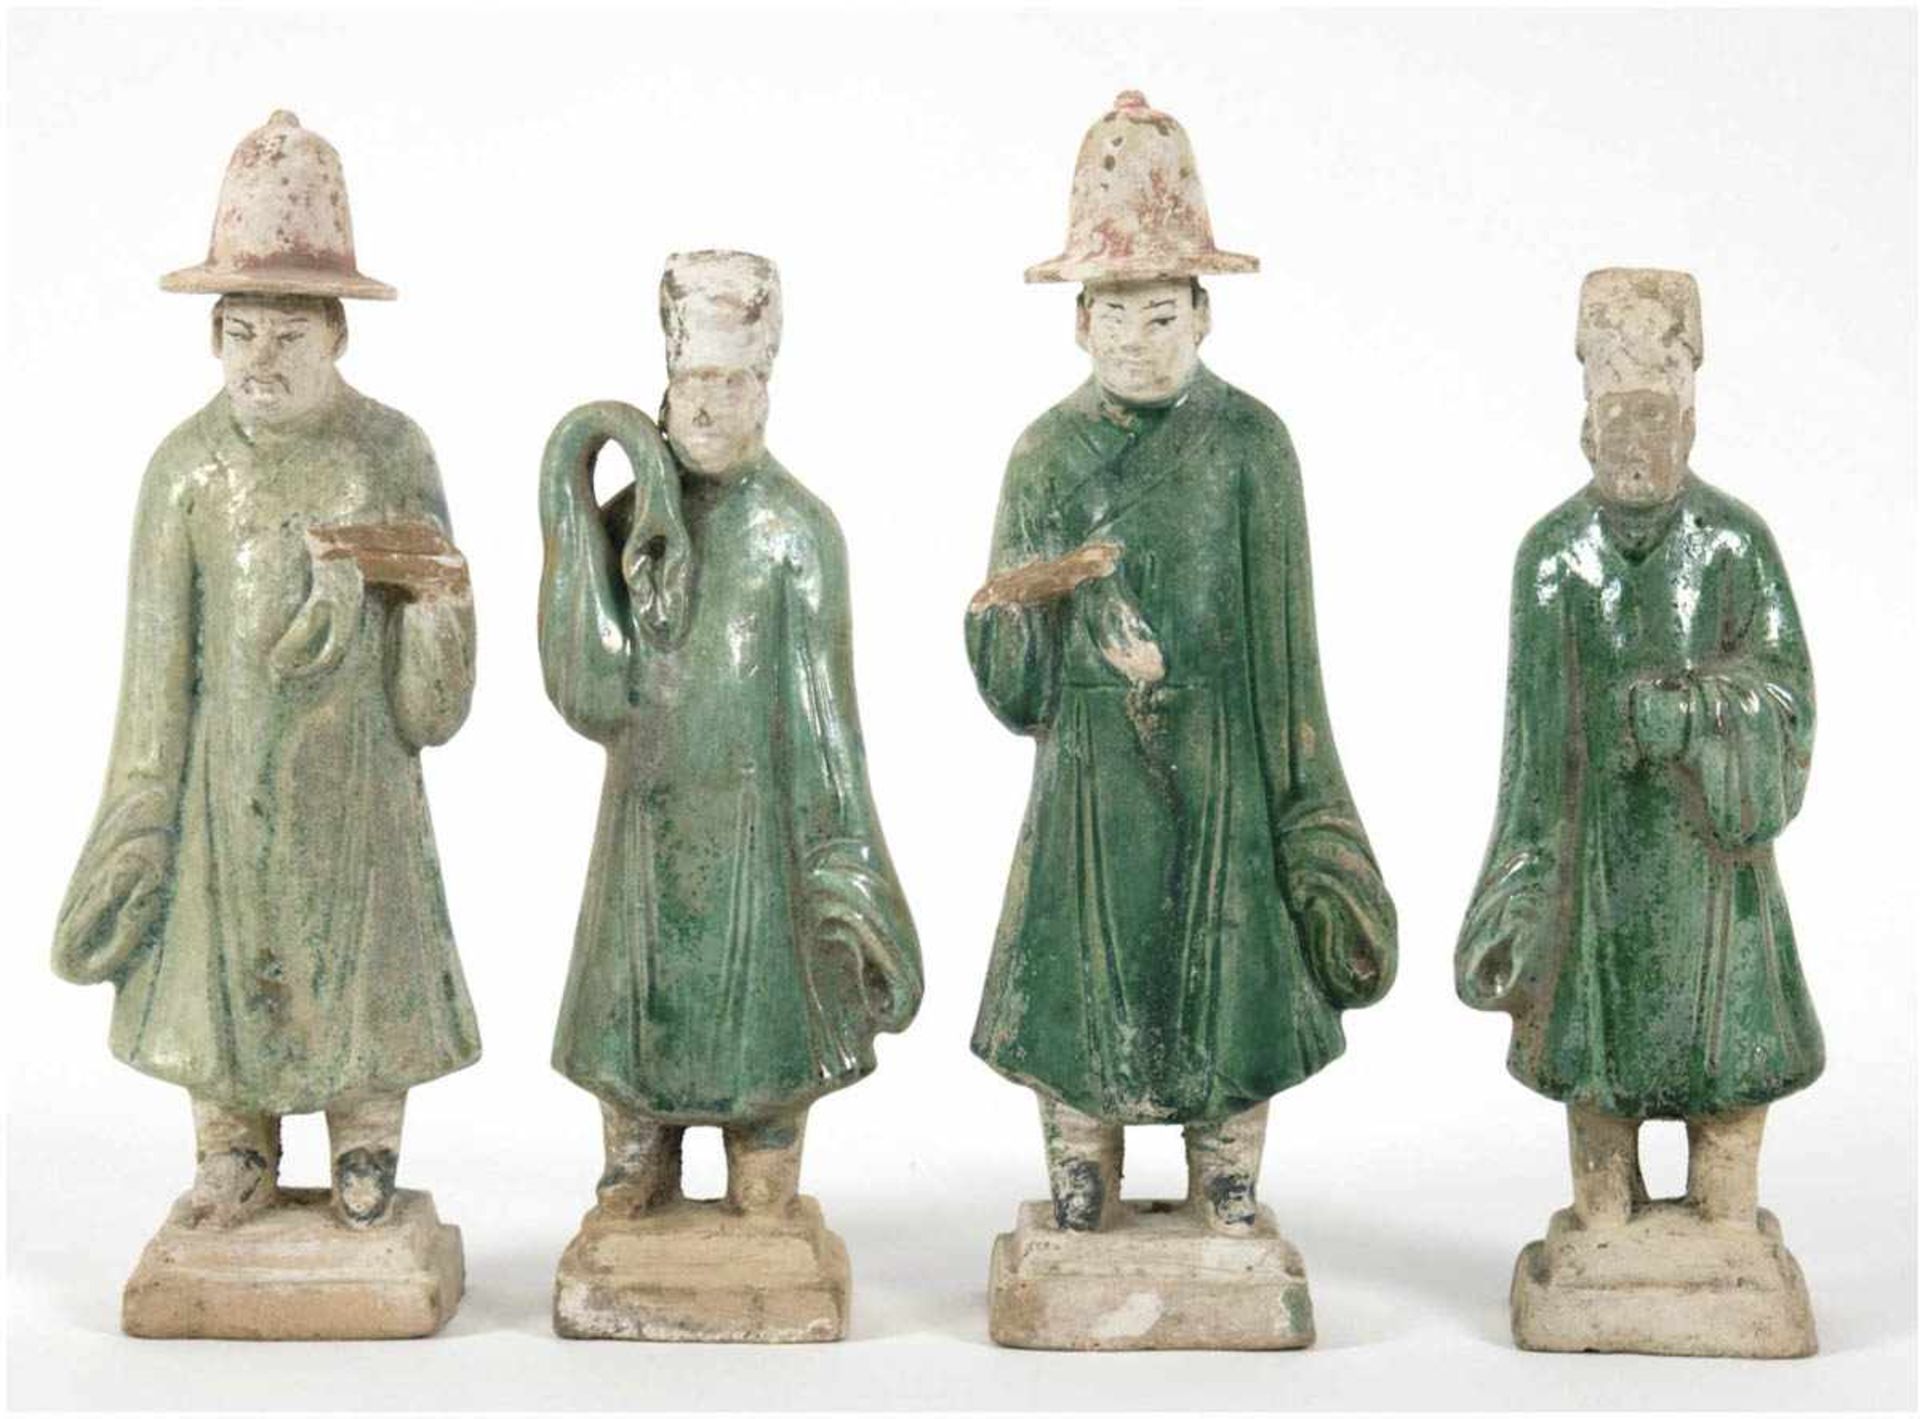 4 Figuren "Chinesische Gelehrte", Ming-Periode, 16. Jh., Grabbeigaben, Terrakotta, grün glasiert,